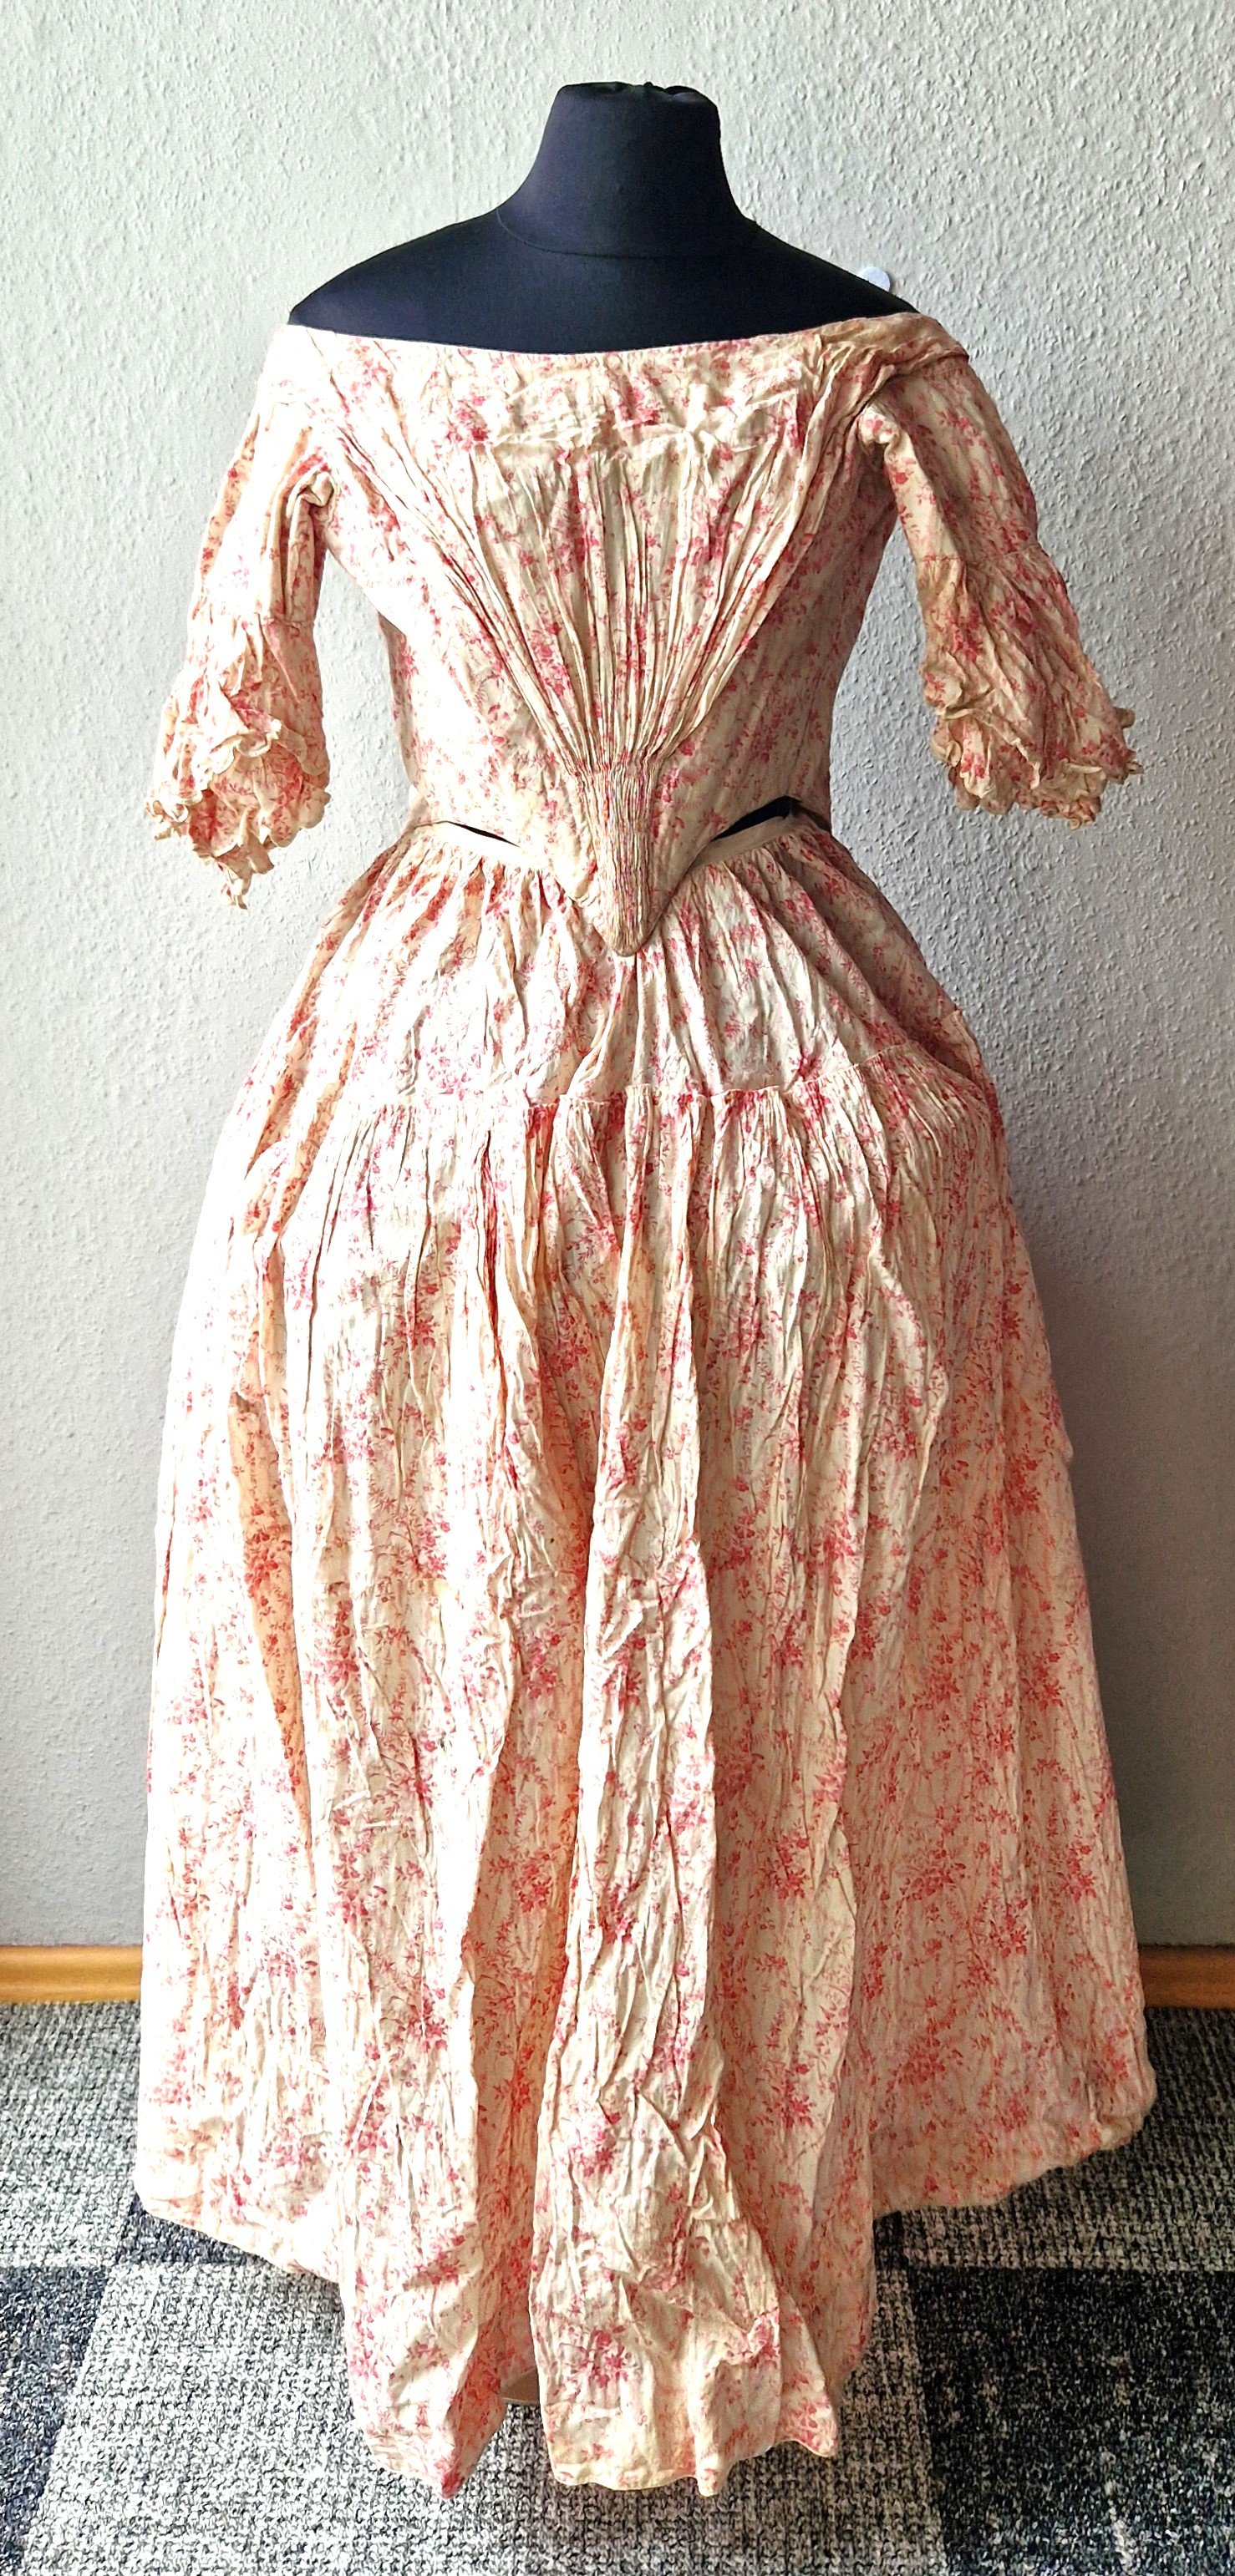 Zweiteiliges Damenkleid aus hellrot geblümtem Stoff mit Reifrockeinsatz, um um 1770-1780 (?) (Schloß Wernigerode GmbH RR-R)